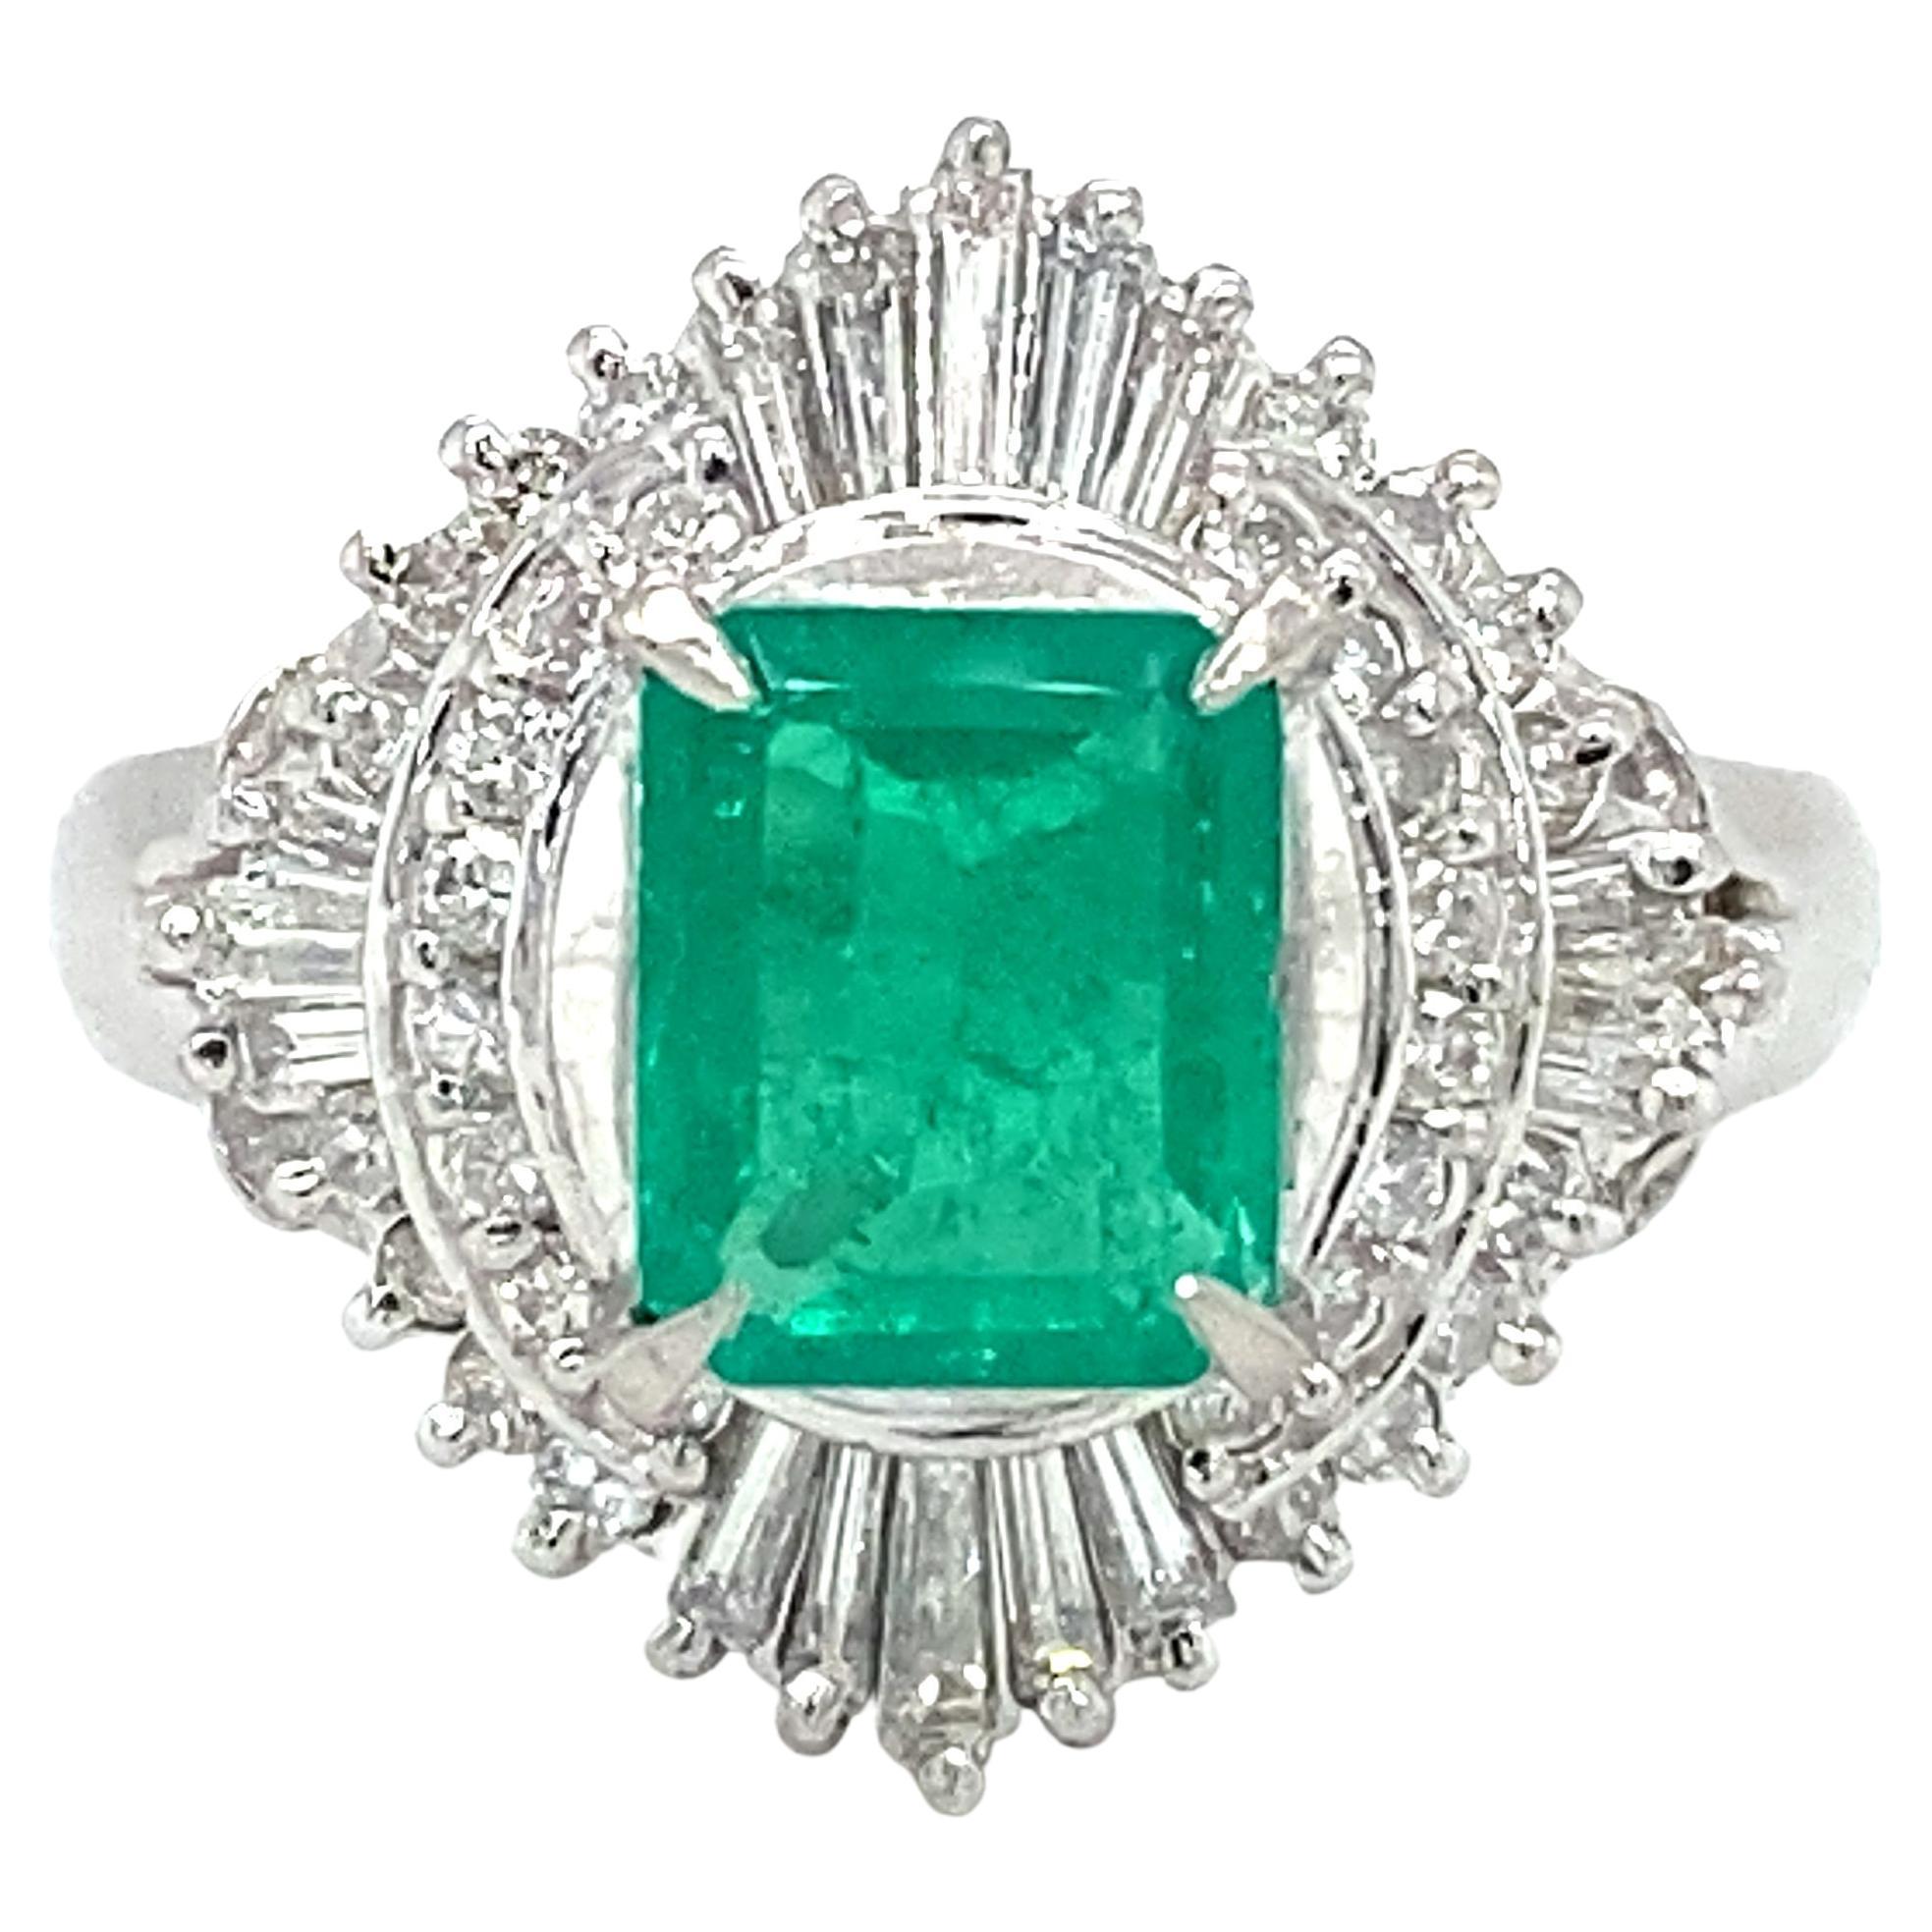 Circa 2000er Jahre 1,02 Karat Smaragd- und Diamant-Cocktailring aus Platin